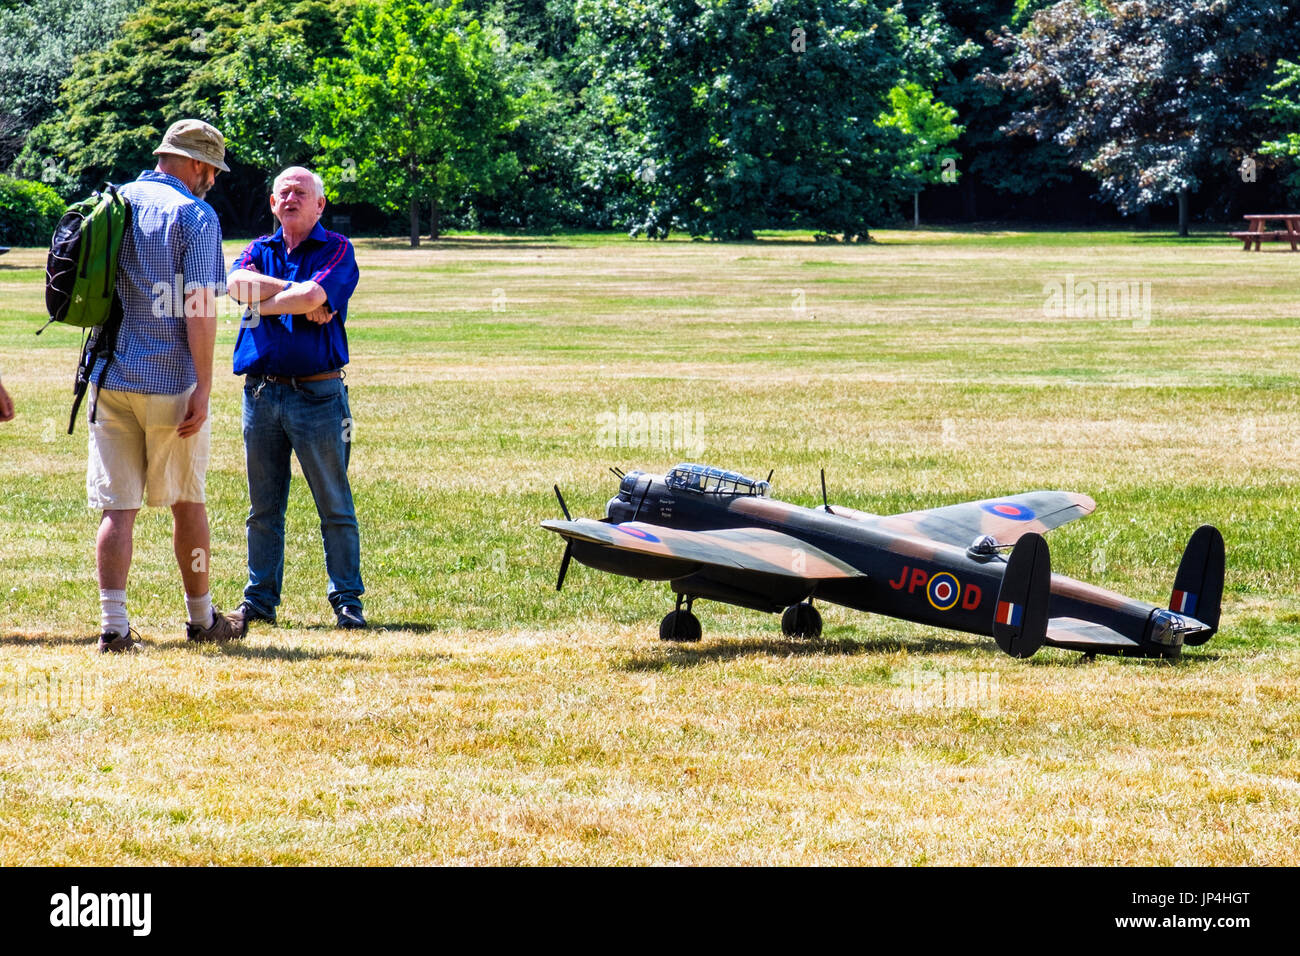 Londres,le parc de Greenwich. Deux hommes debout à côté d'avion militaire modèle avec la peinture de camouflage, deux hommes en avion jouet Banque D'Images